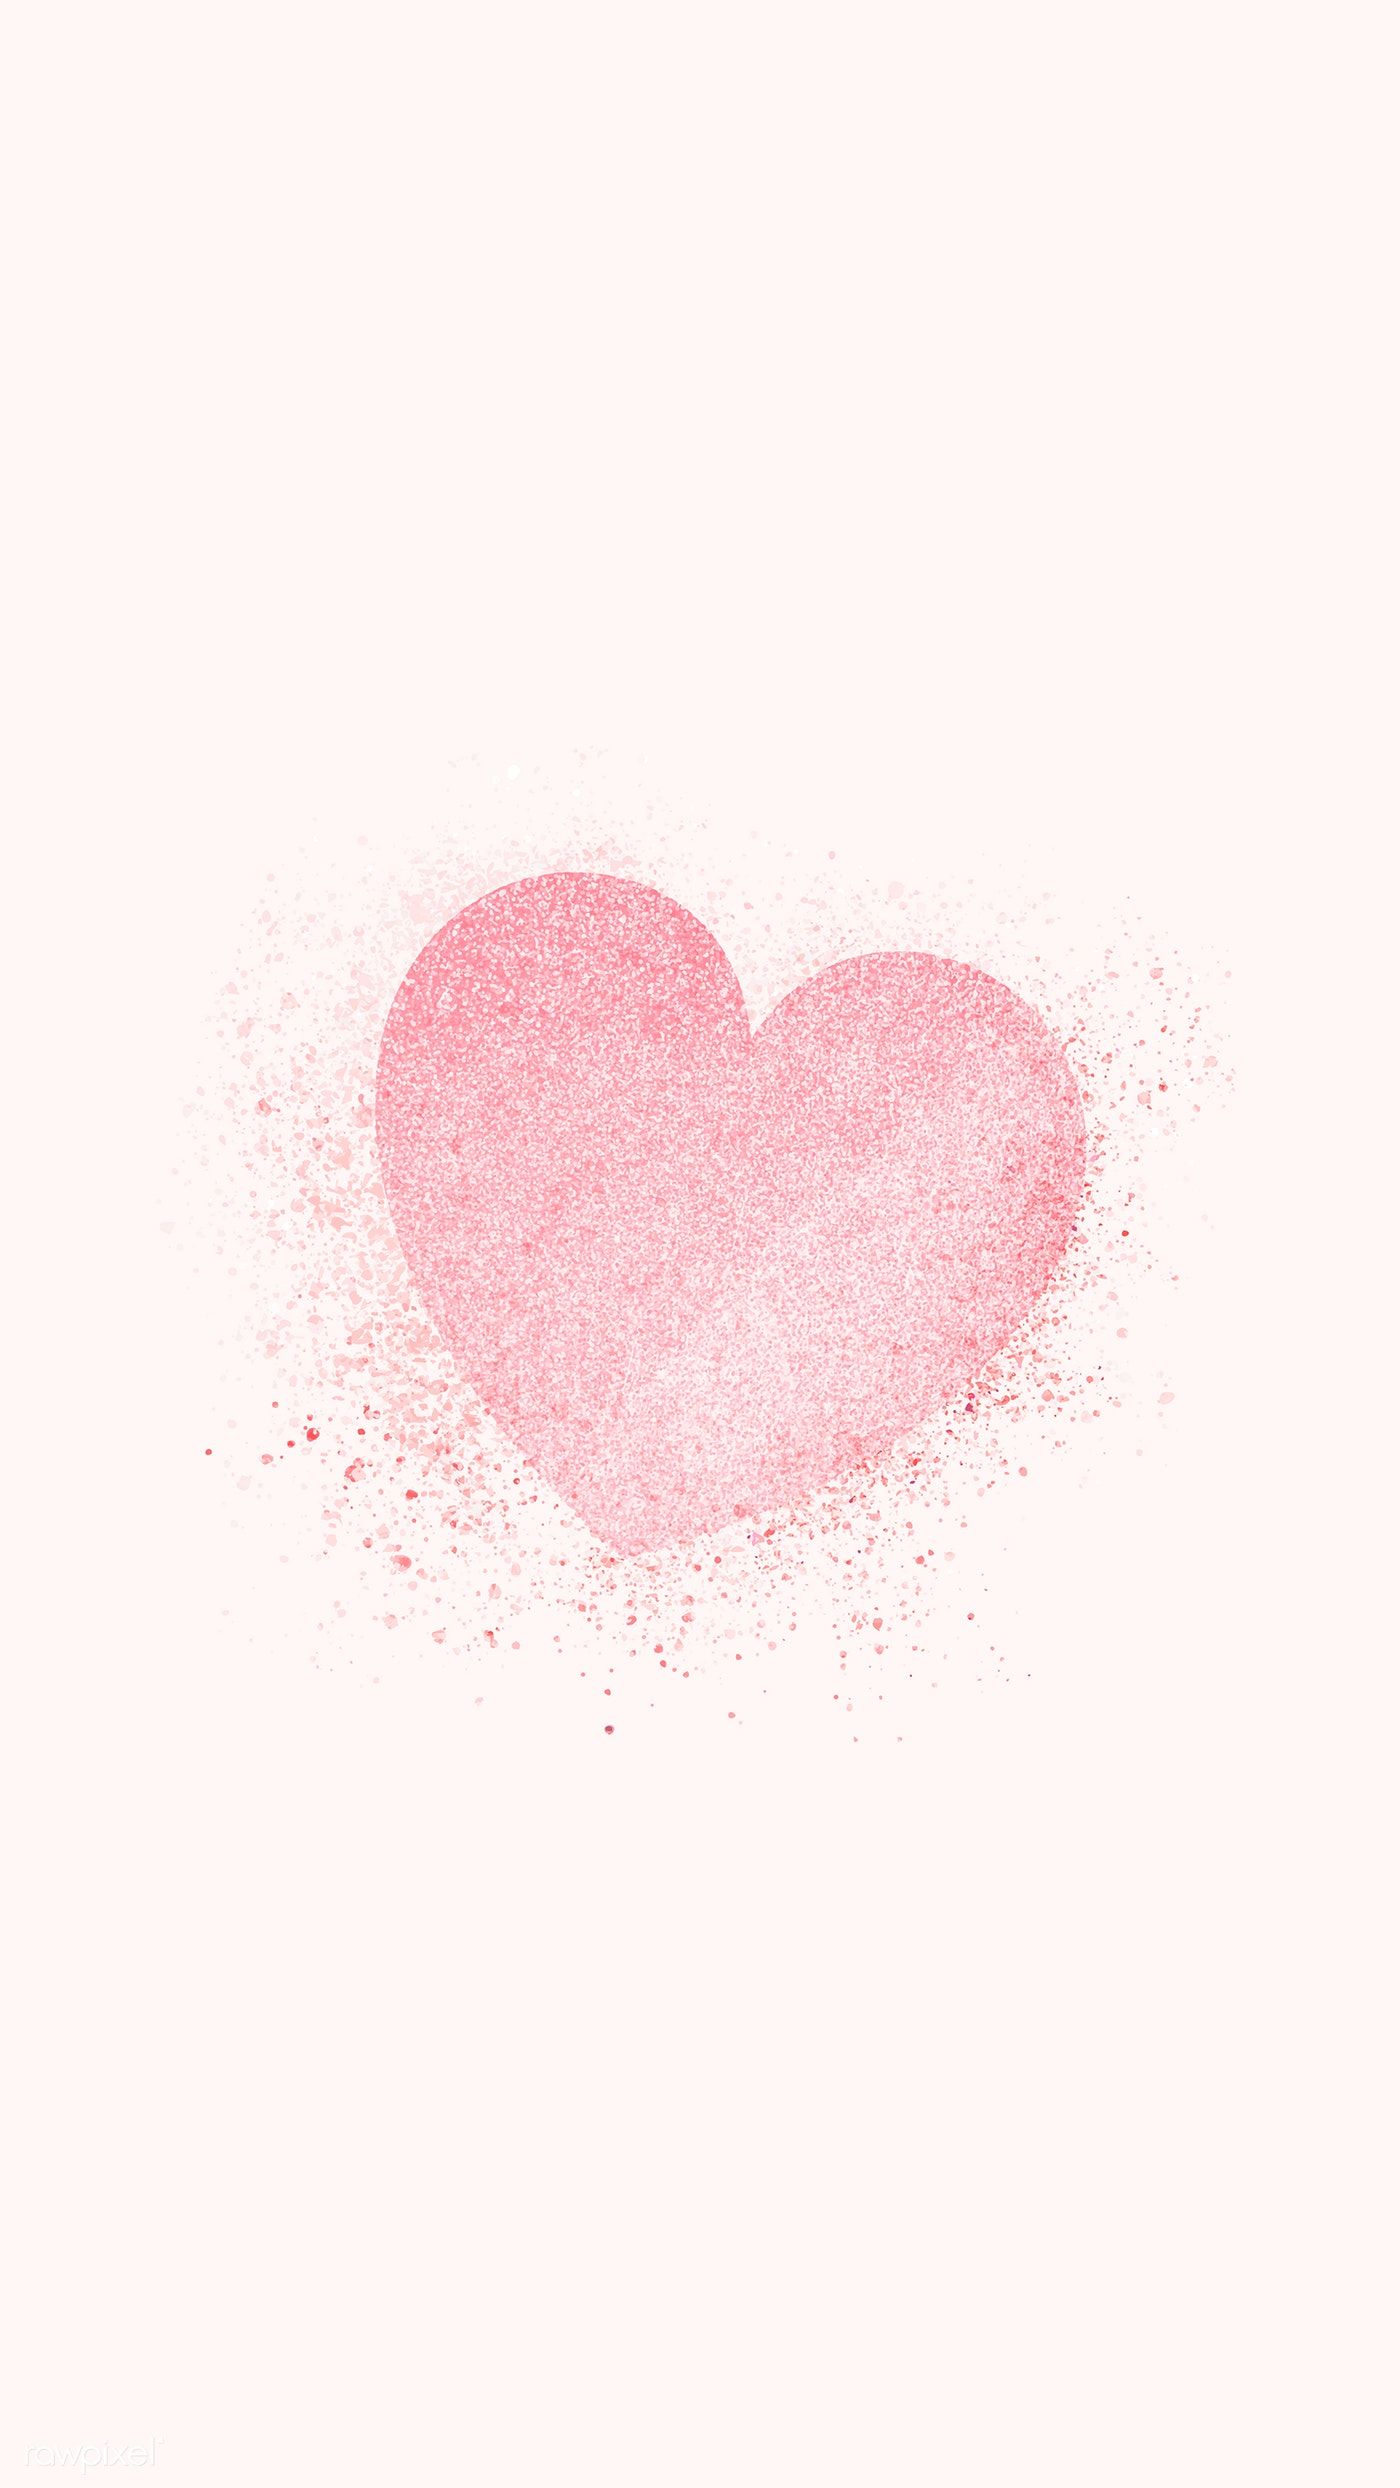 Shimmering valentines pink heart vector. premium image / busbus / Kappy Kappy. Coração aquarela, Papeis de parede delicados, Fundo do coração